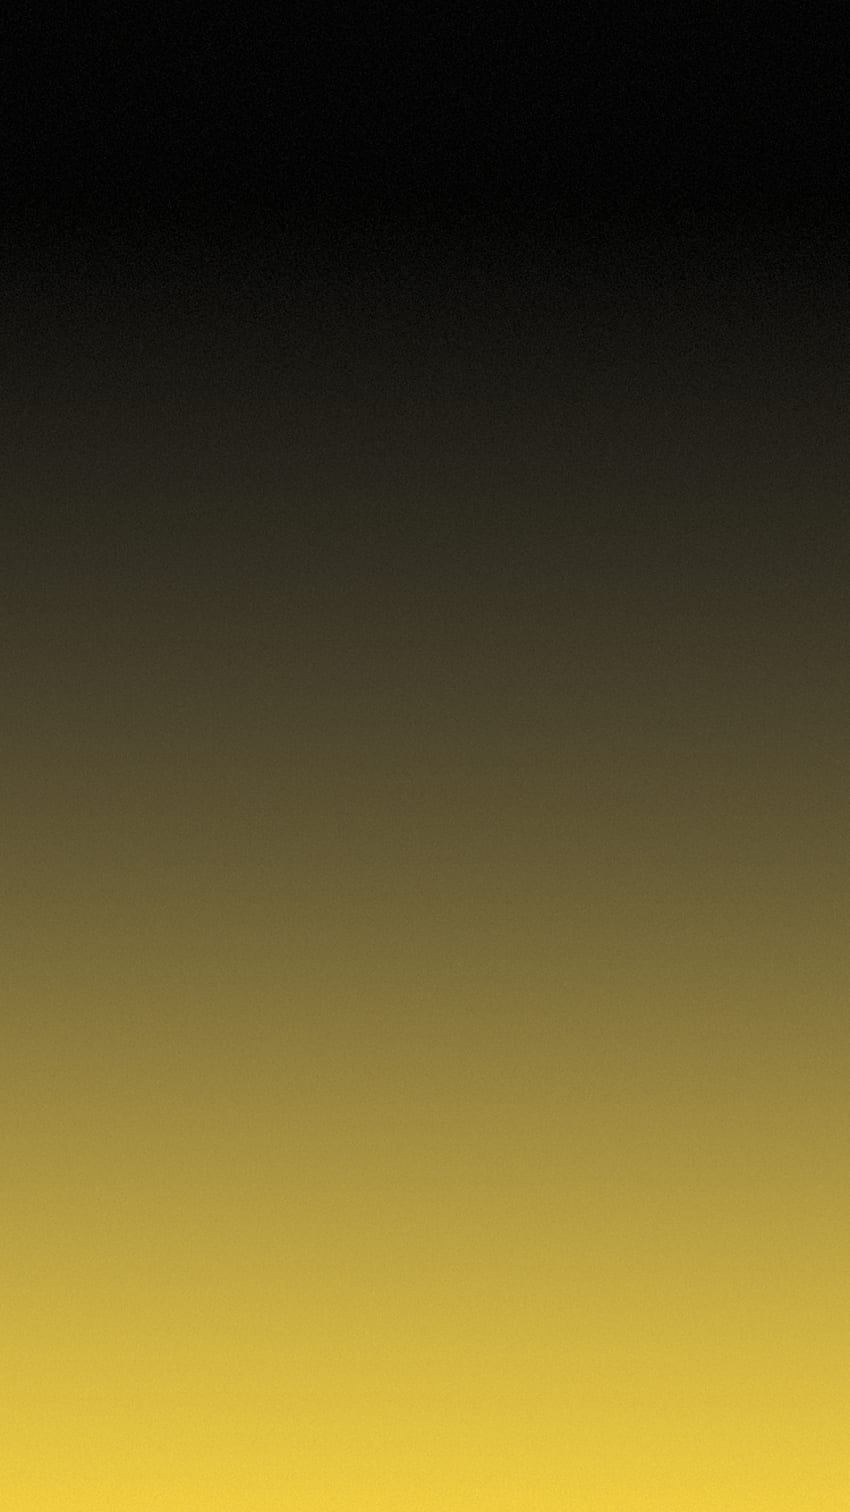 iPhone completo negro y amarillo, manzana amarilla fondo de pantalla del teléfono